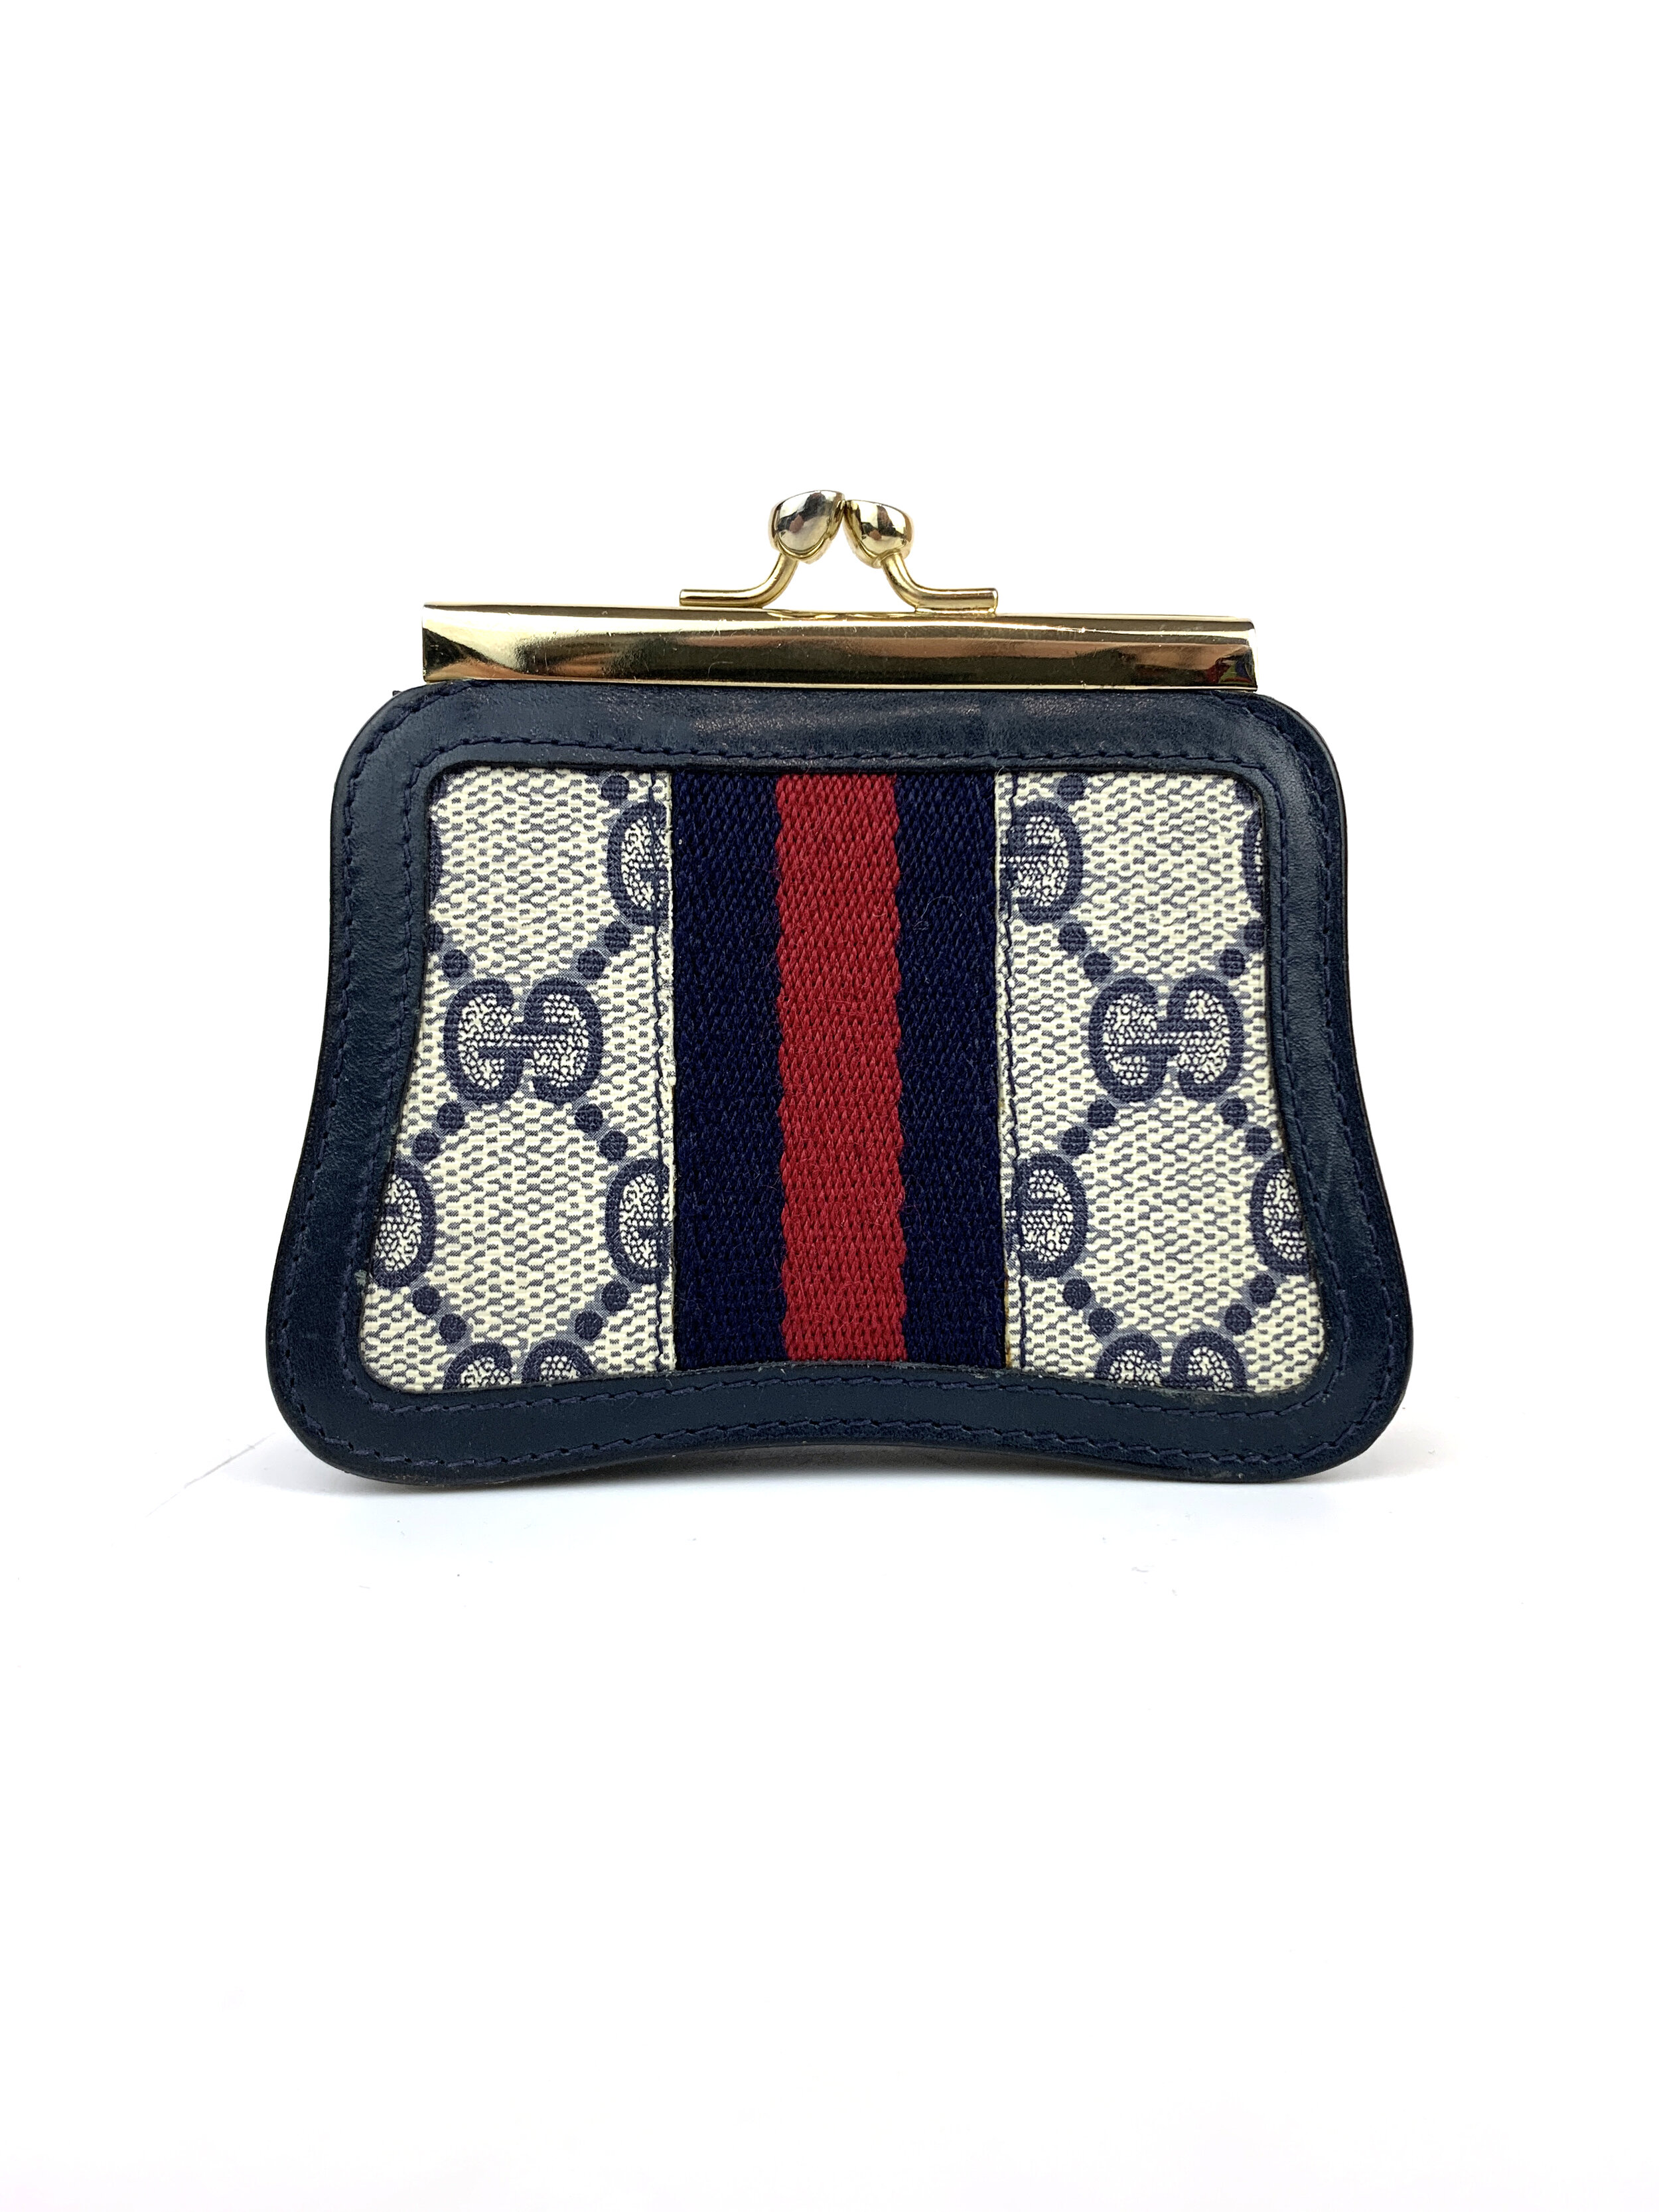 Vintage Gucci navy blue monogram canvas handbag 1980s